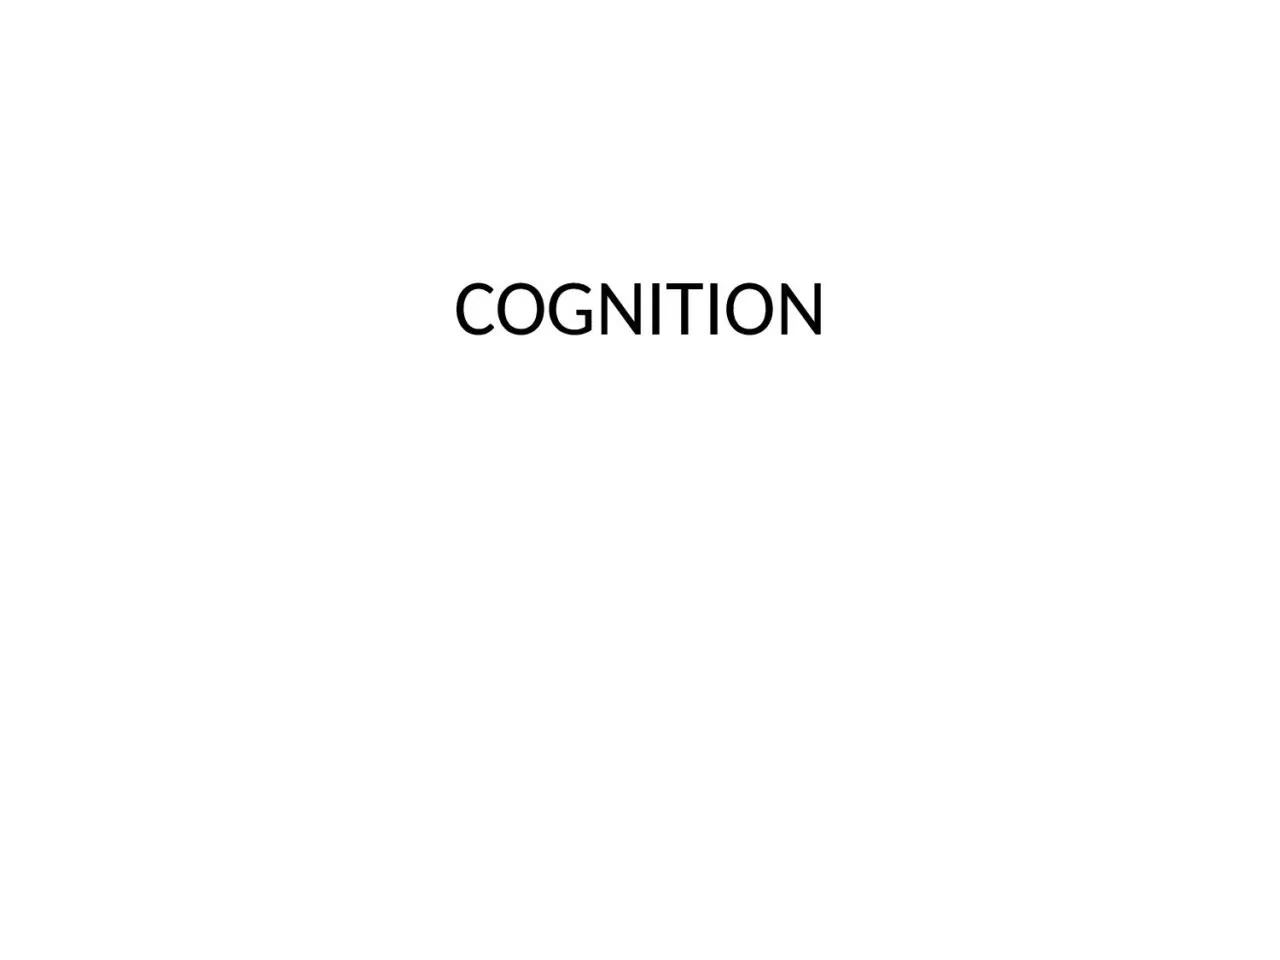 COGNITION Cognition Questions